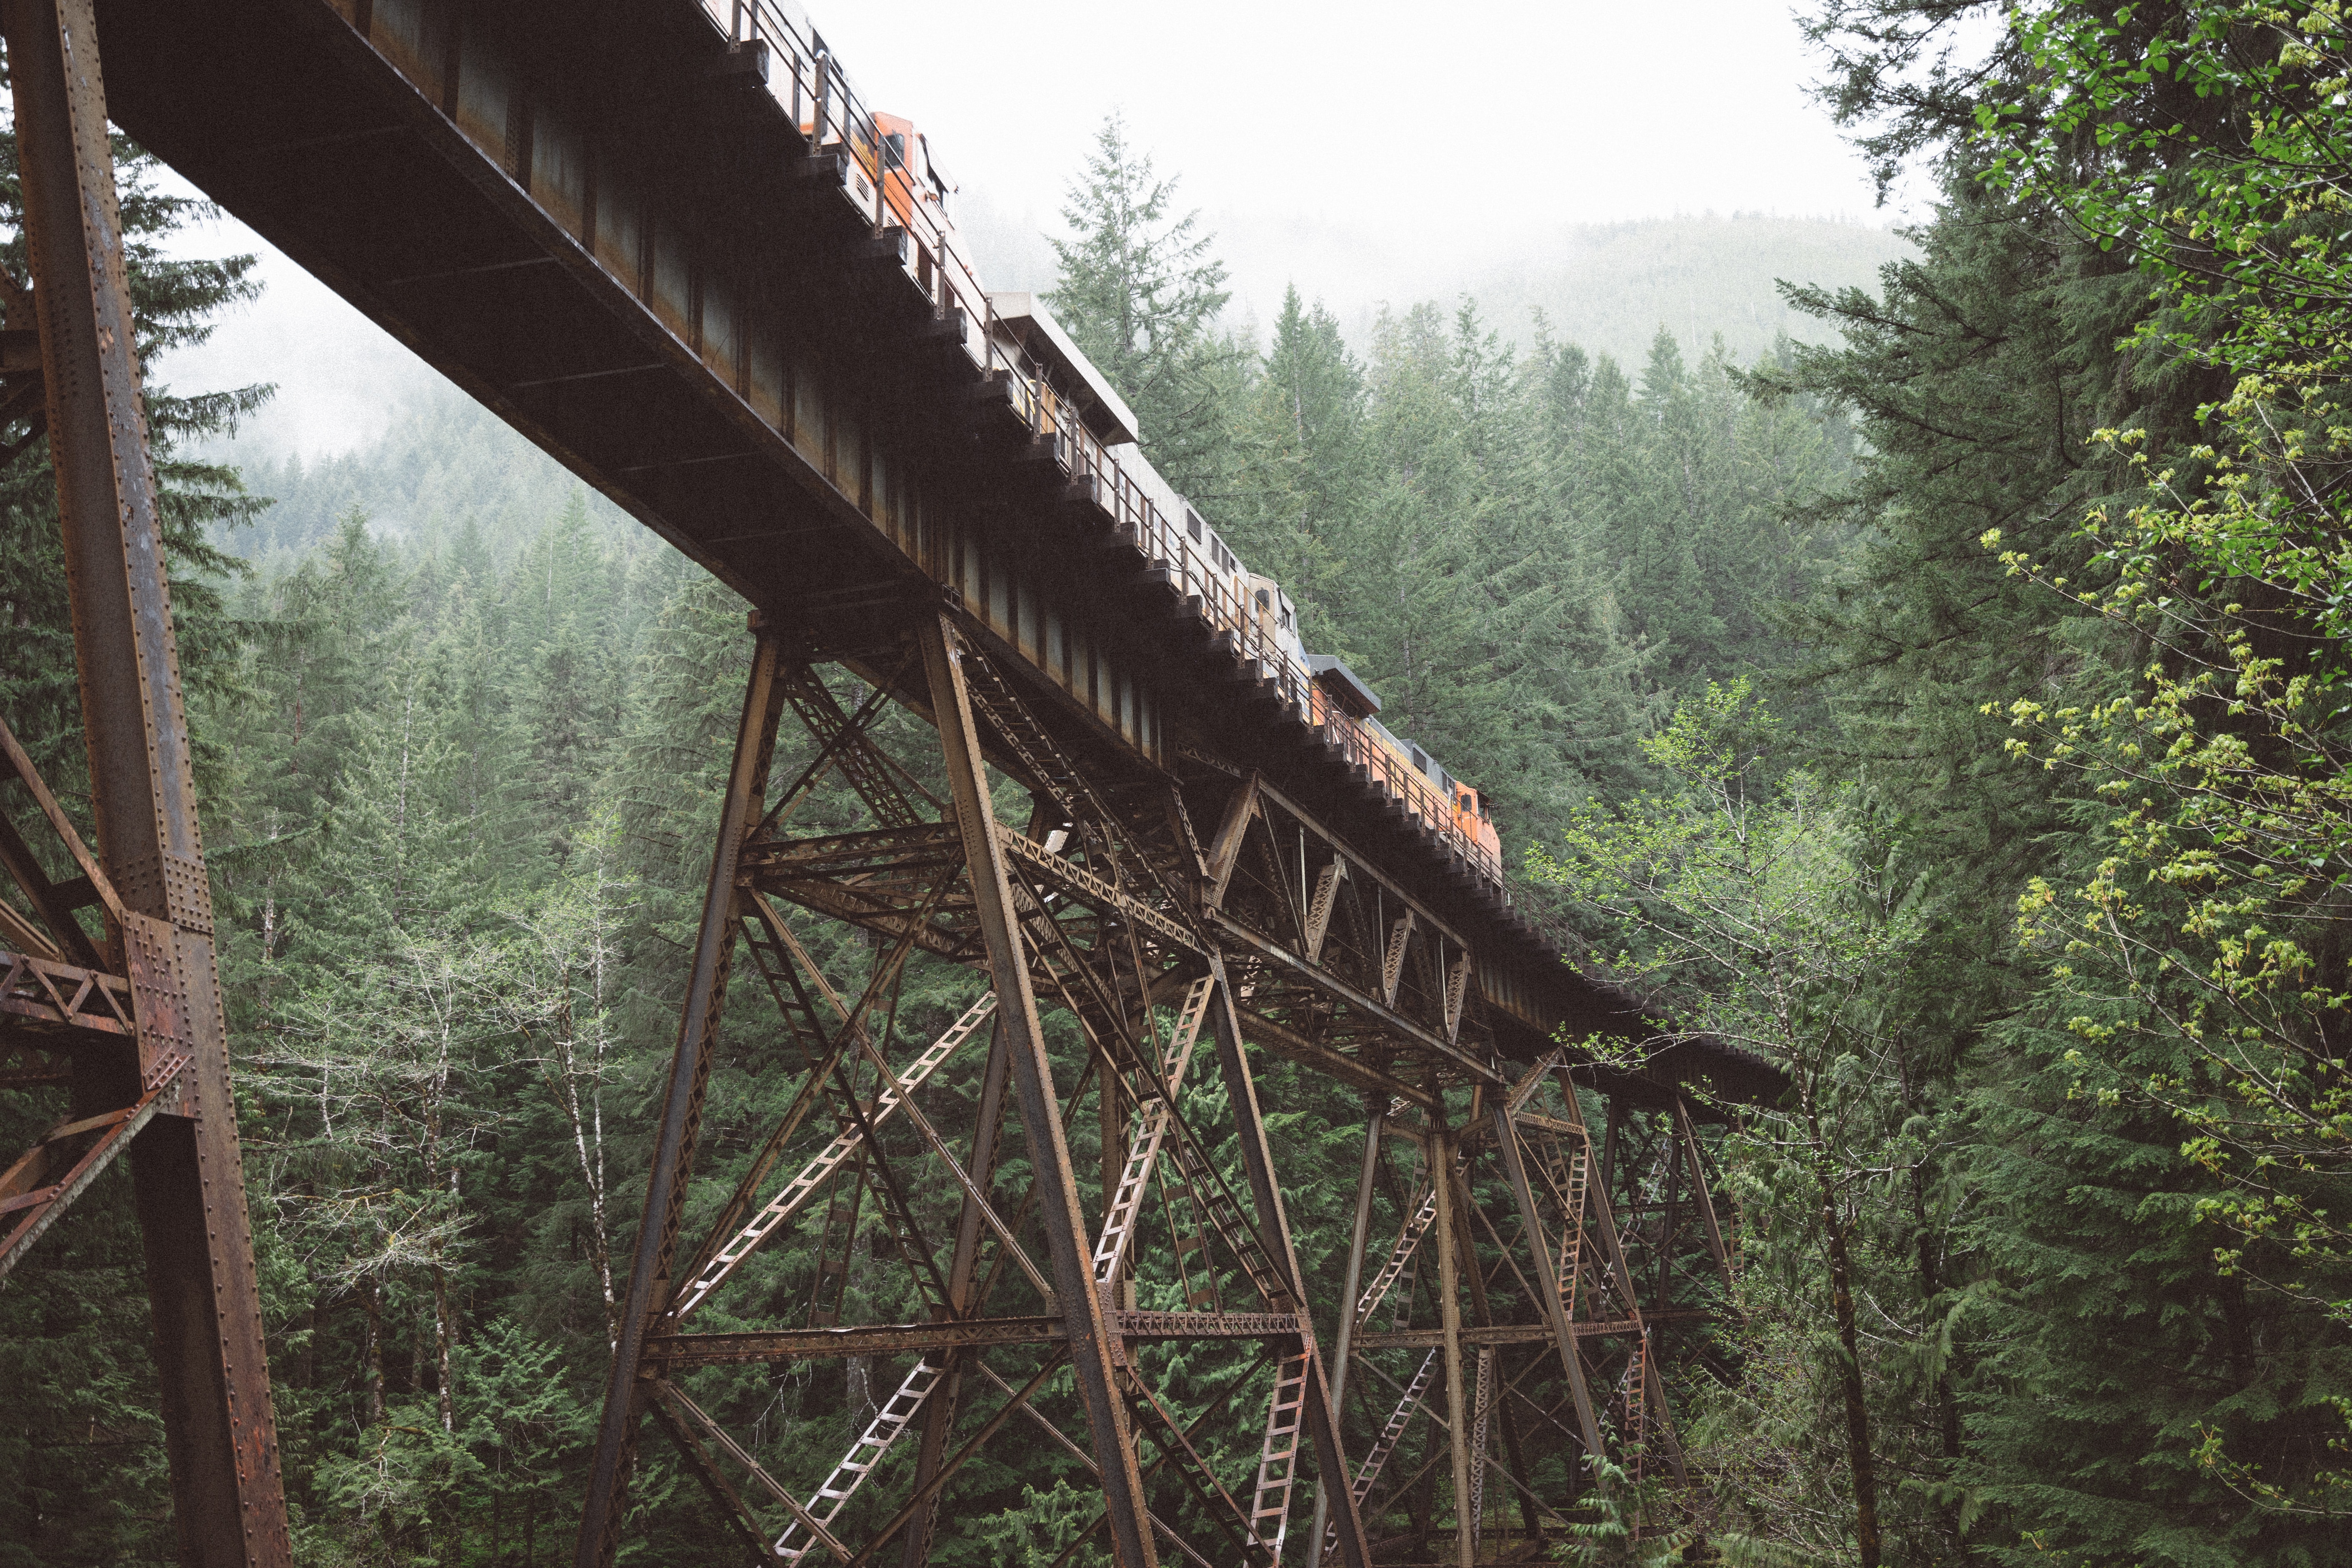 Скачать обои Железнодорожный Мост на телефон бесплатно